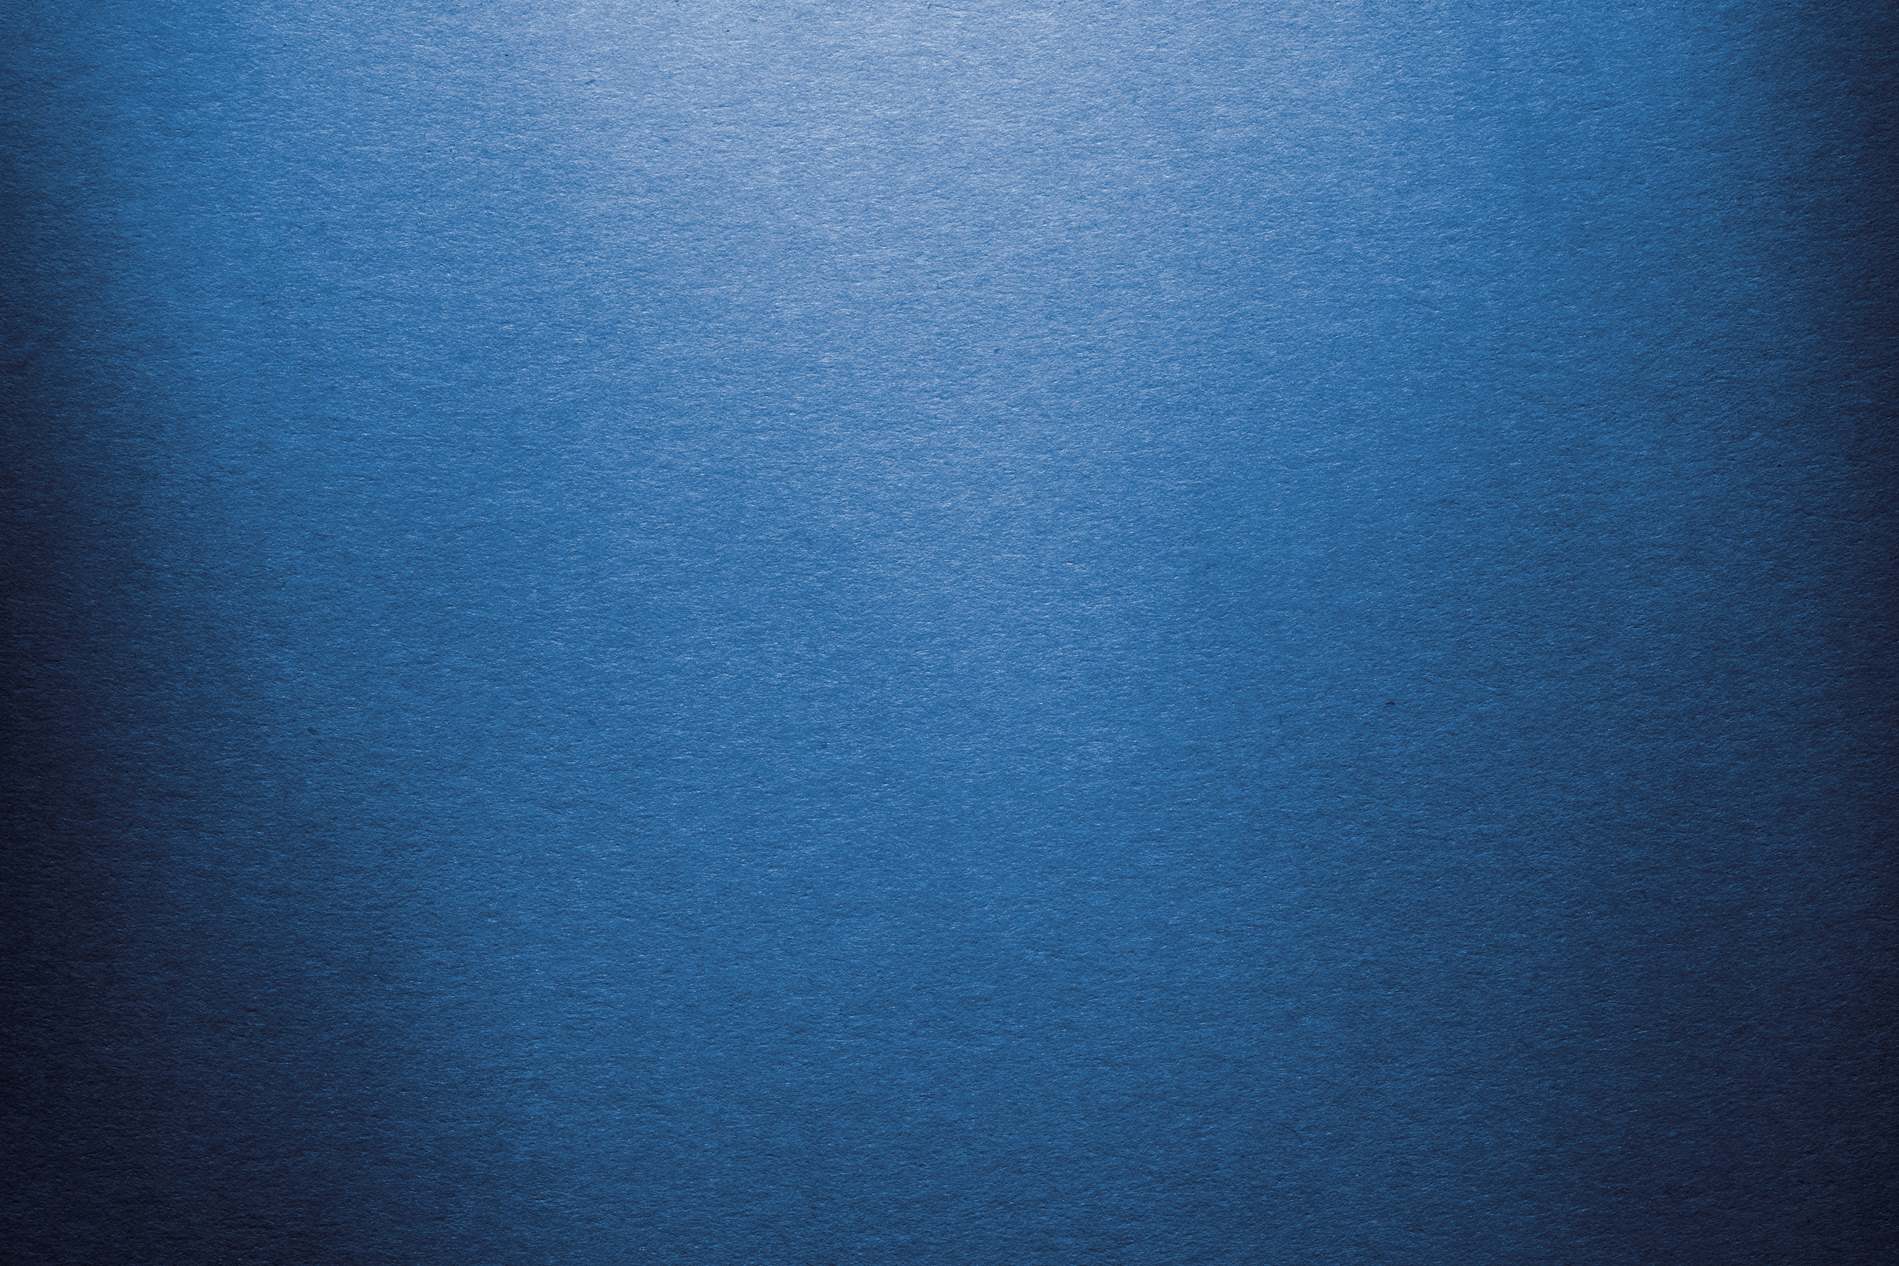 blue vignette background